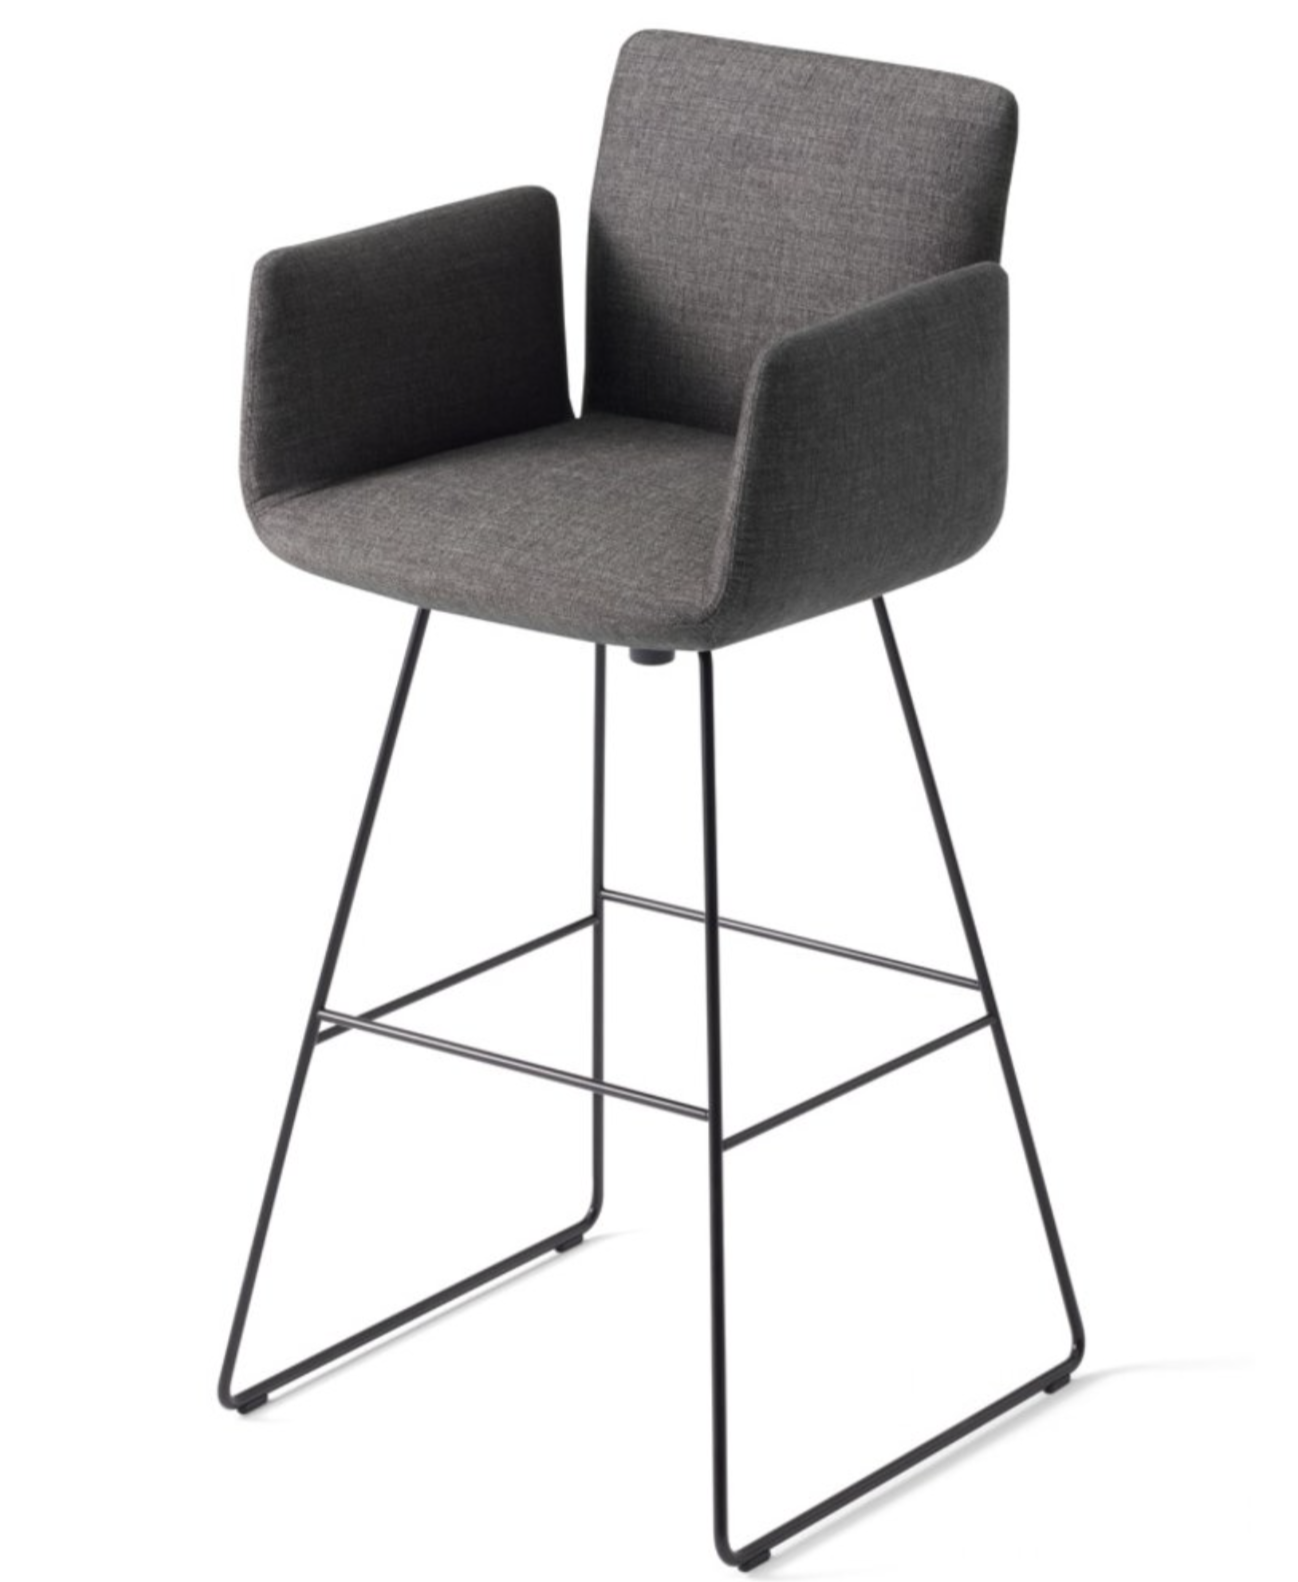 jalis stool sled Product Image